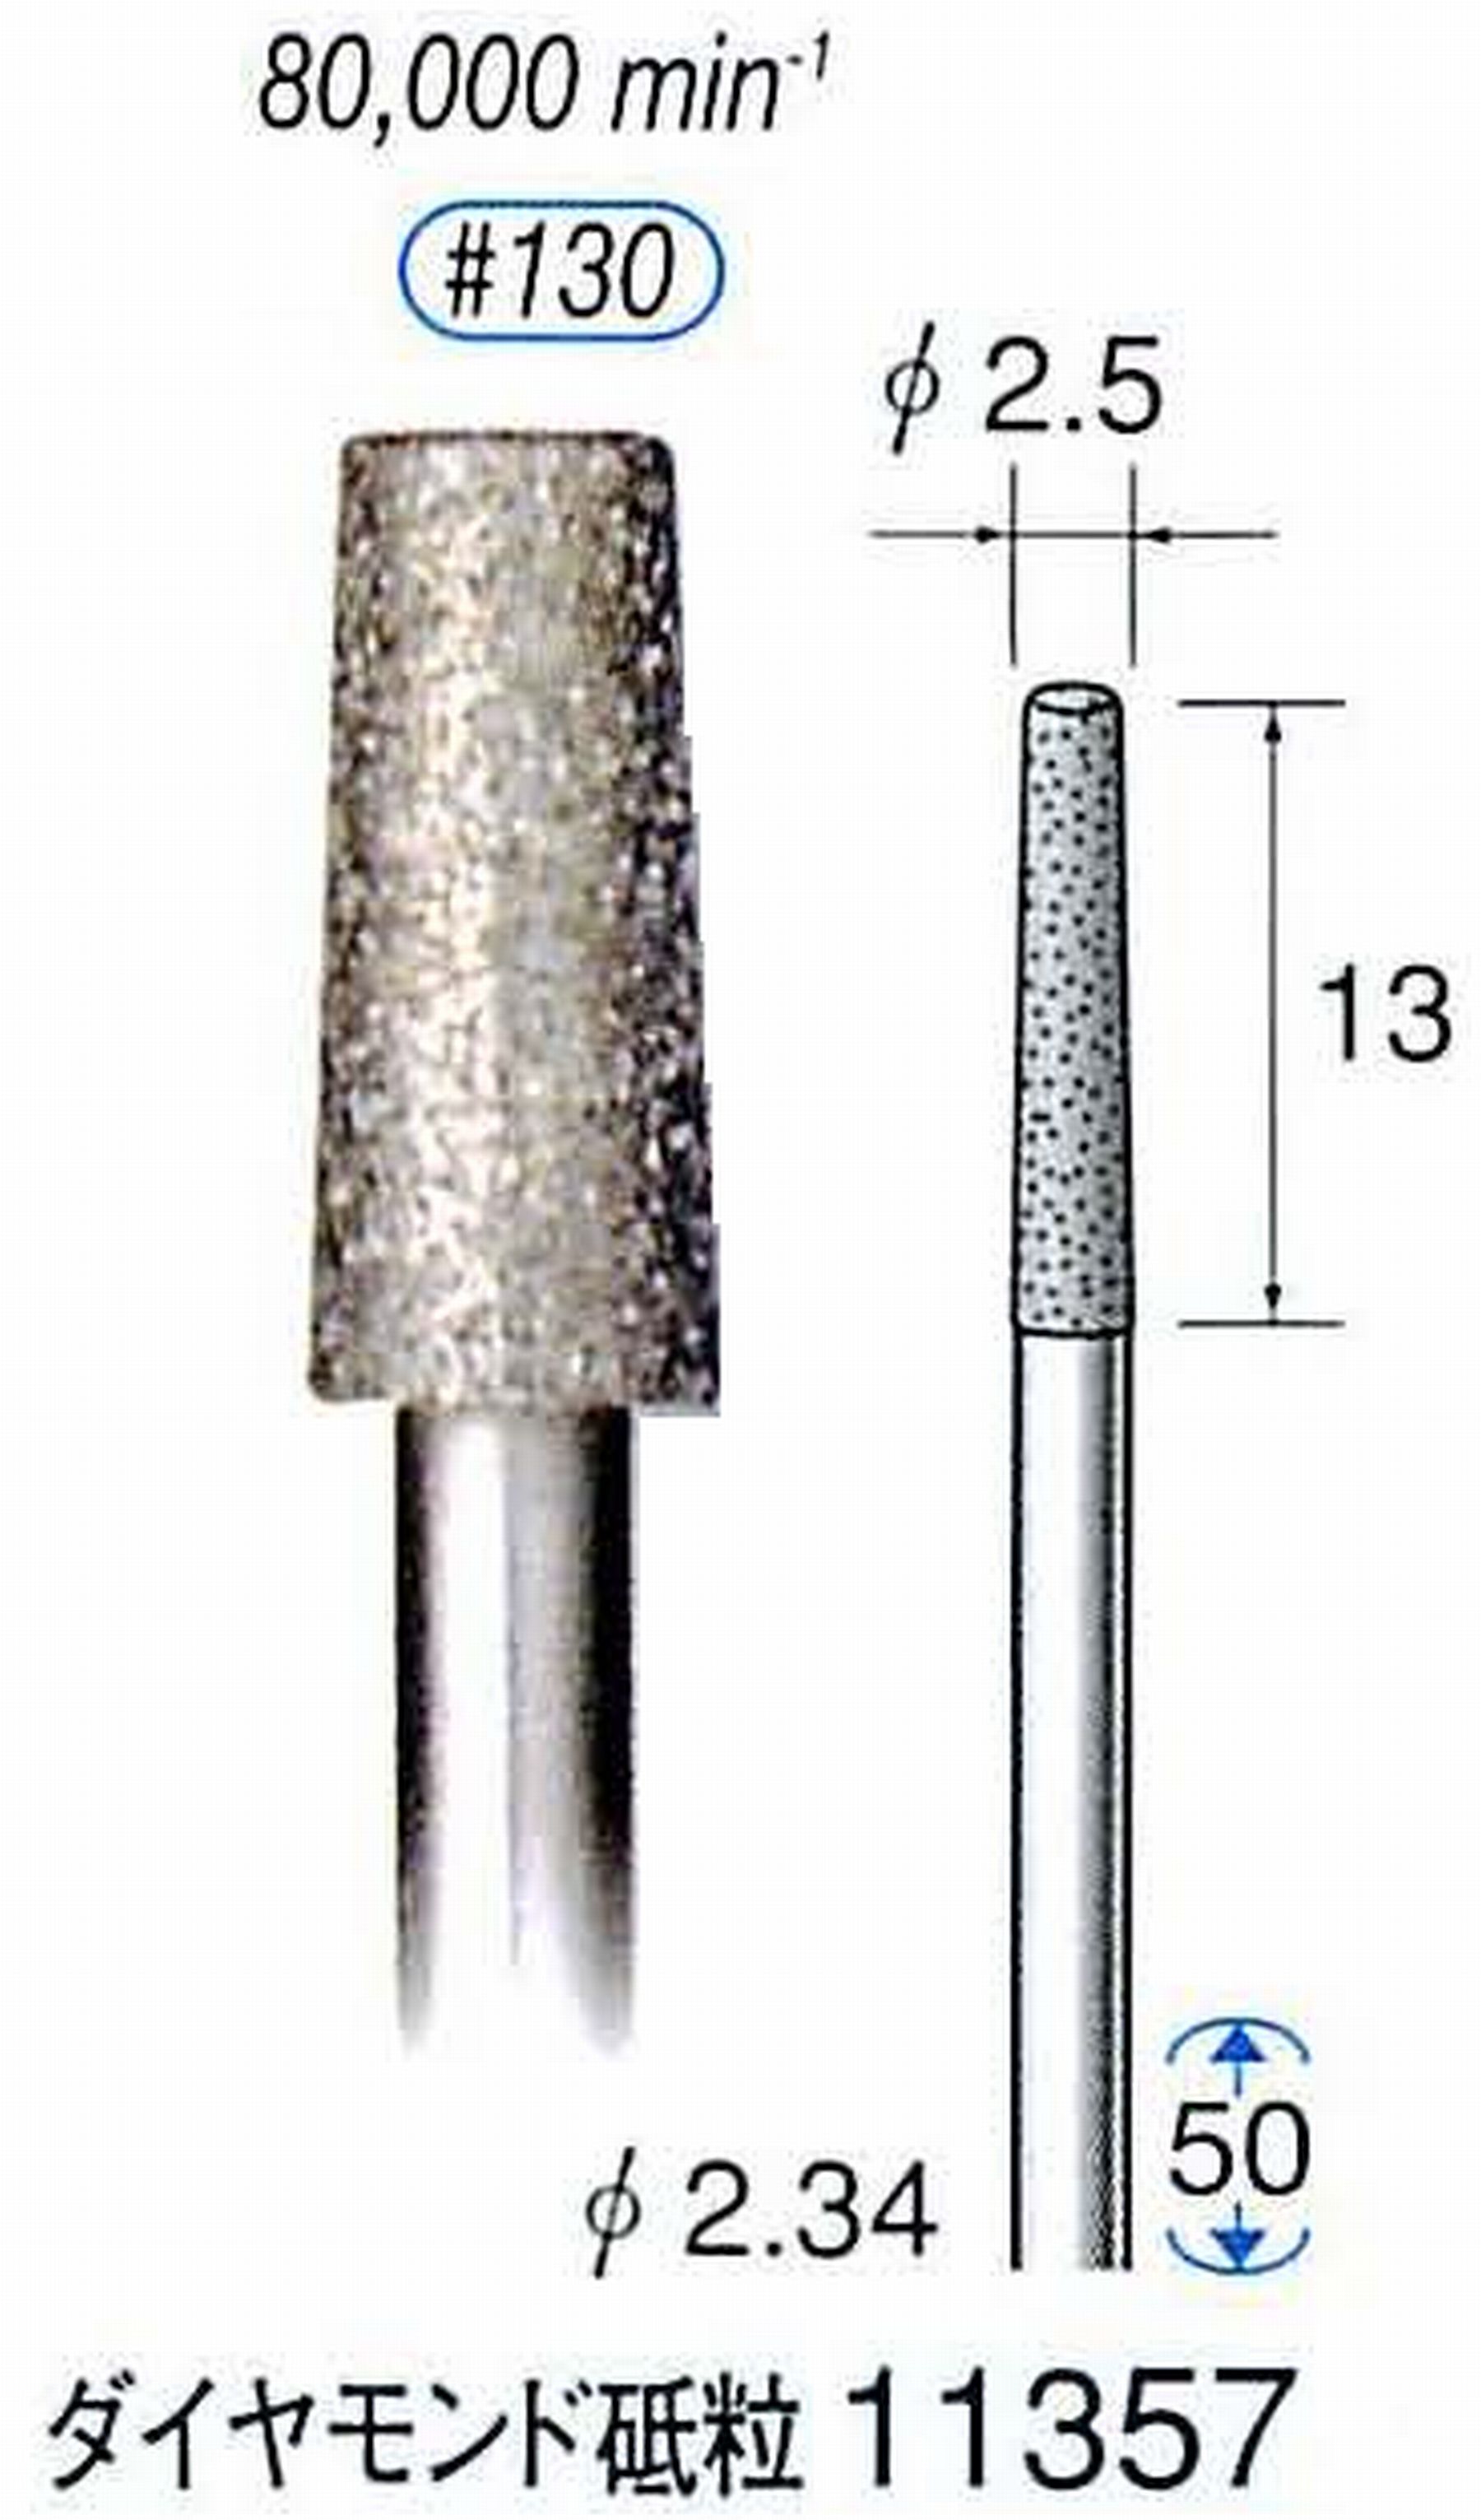 ナカニシ/NAKANISHI 電着ダイヤモンドバー ダイヤモンド砥粒 軸径(シャンク)φ2.34mm 11357